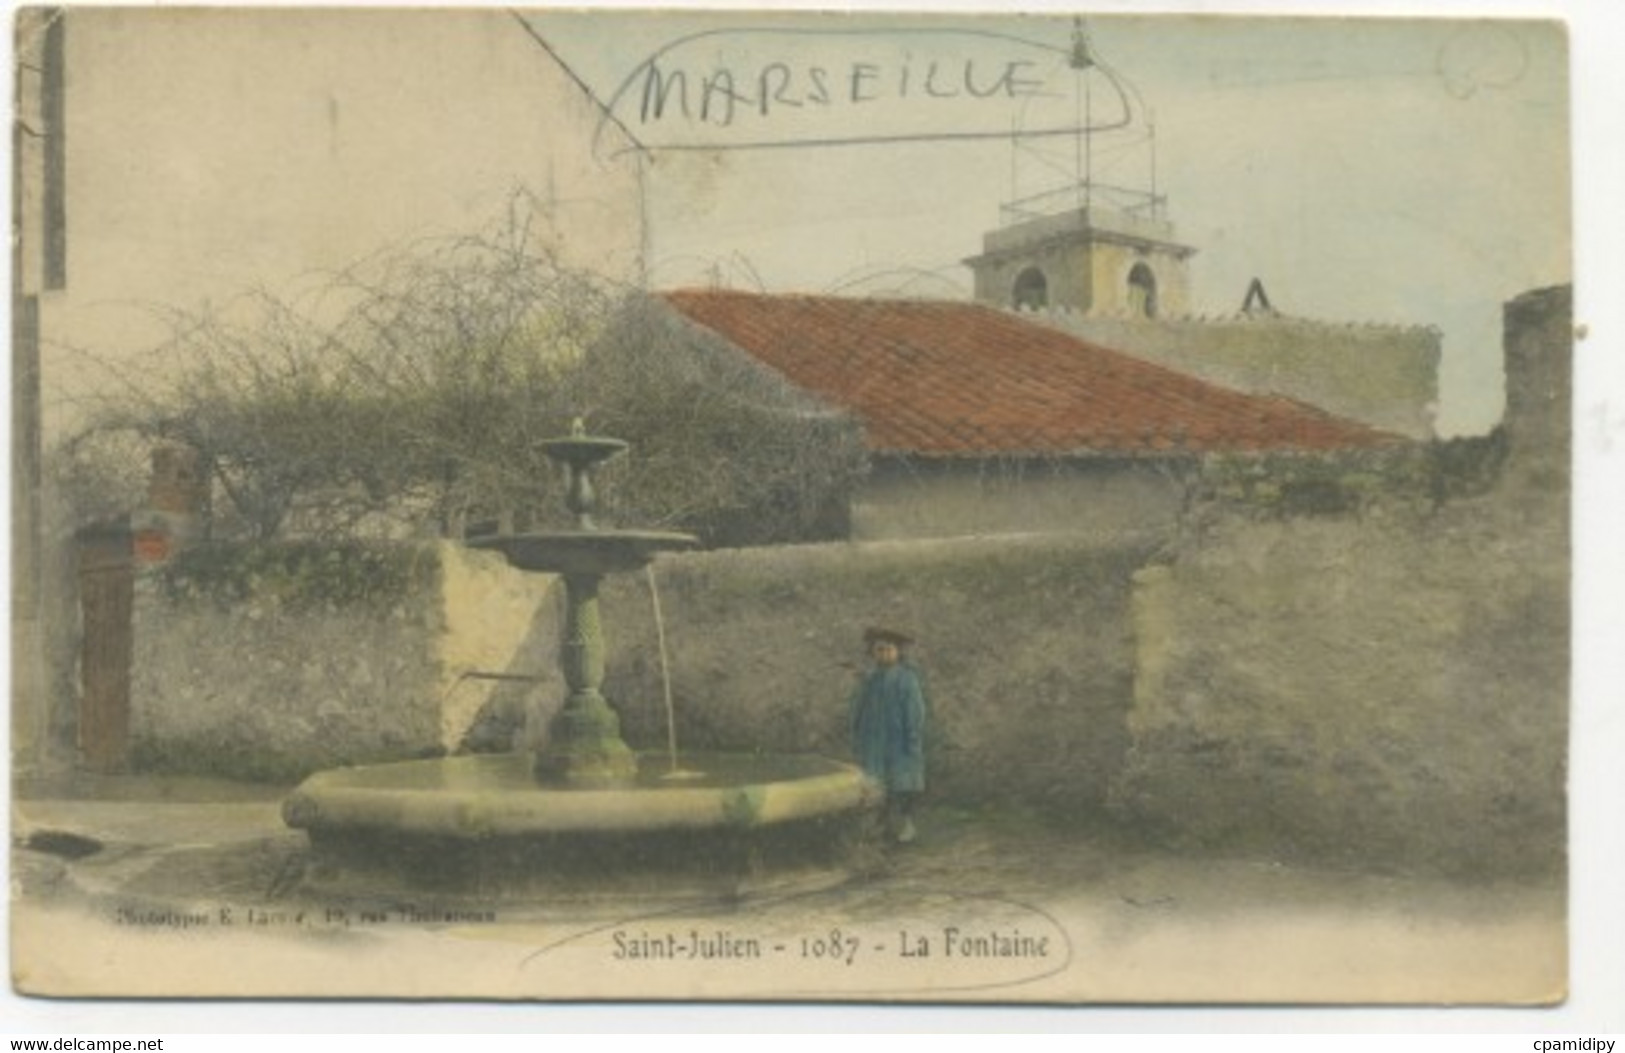 13/MARSEILLE - Saint-Julien - La Fontaine (Phototypie E. Lacour) - Saint Barnabé, Saint Julien, Montolivet